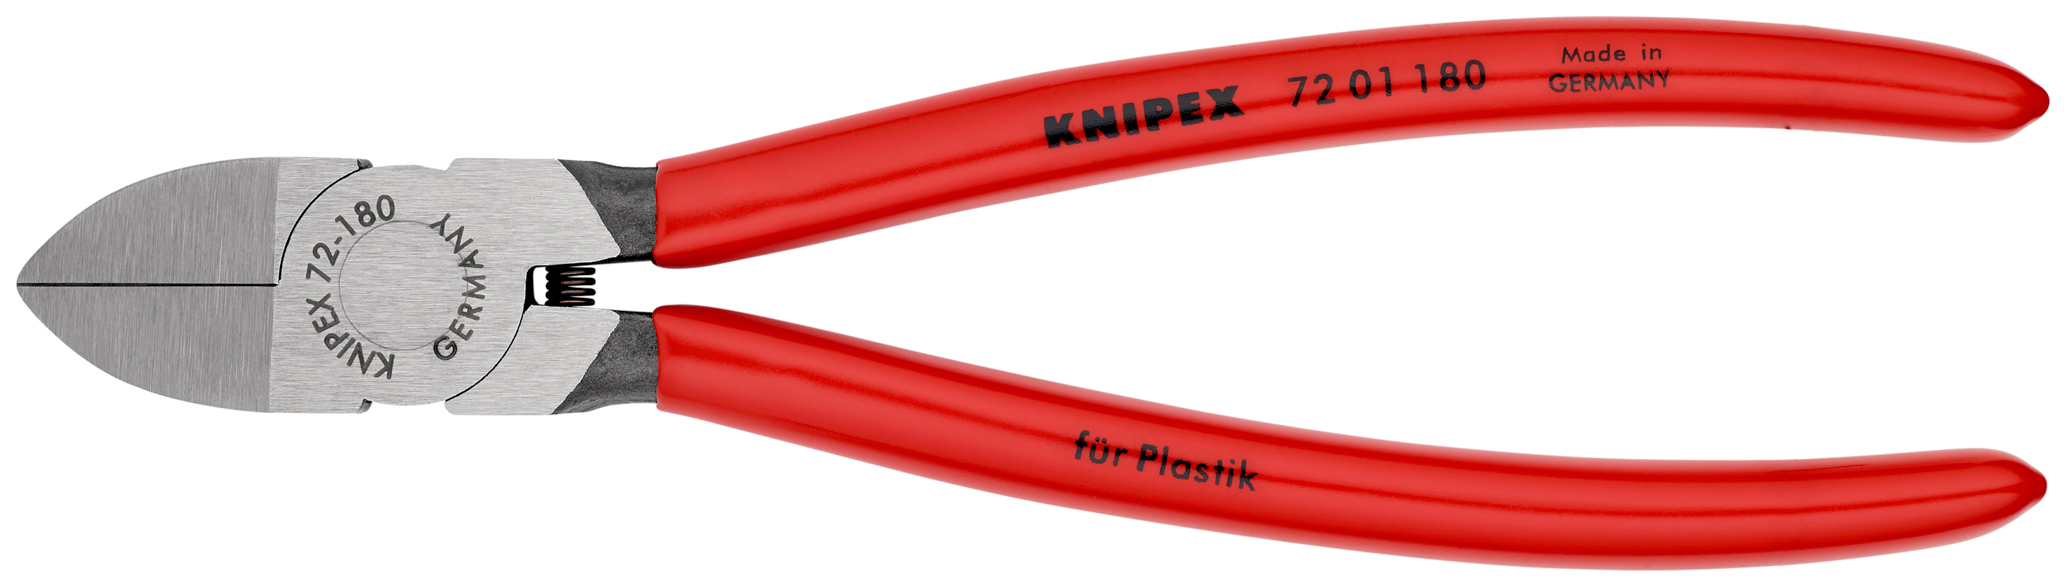 Pince coupante cote pr plastique 180mm KNIPEX - 72 01 180